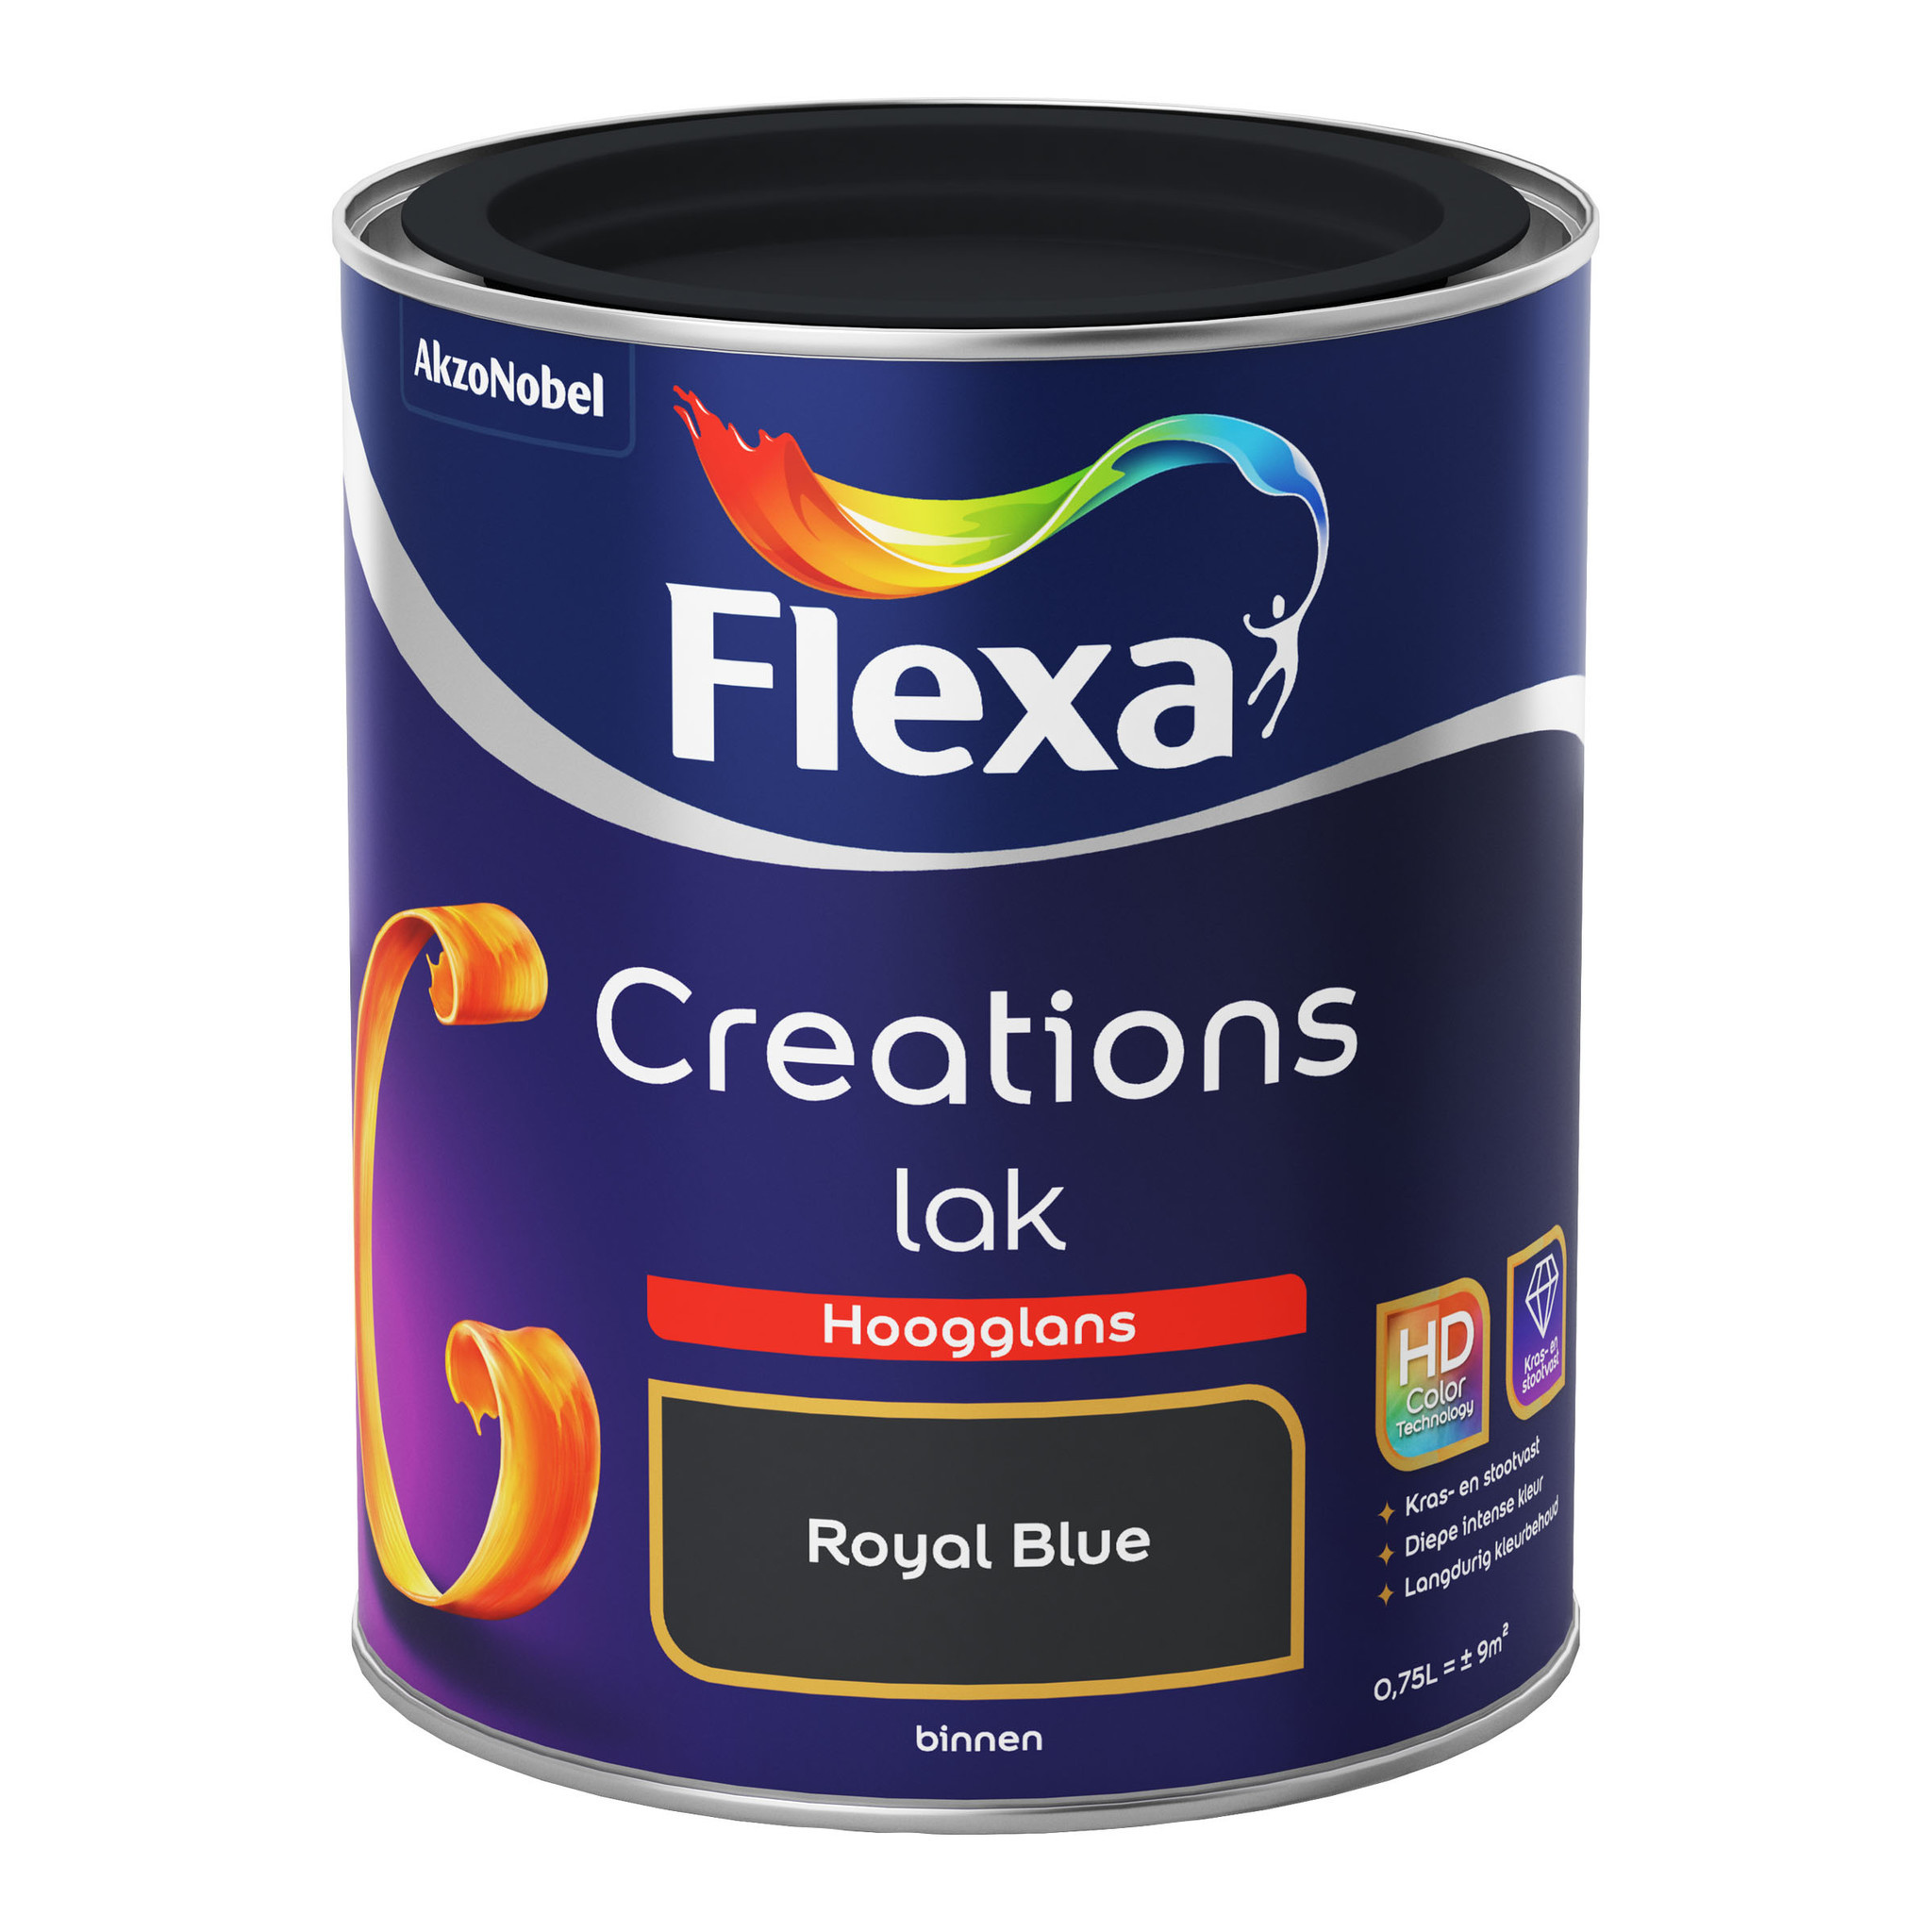 Flexa Creations Lak Hoogglans - Royal Blue